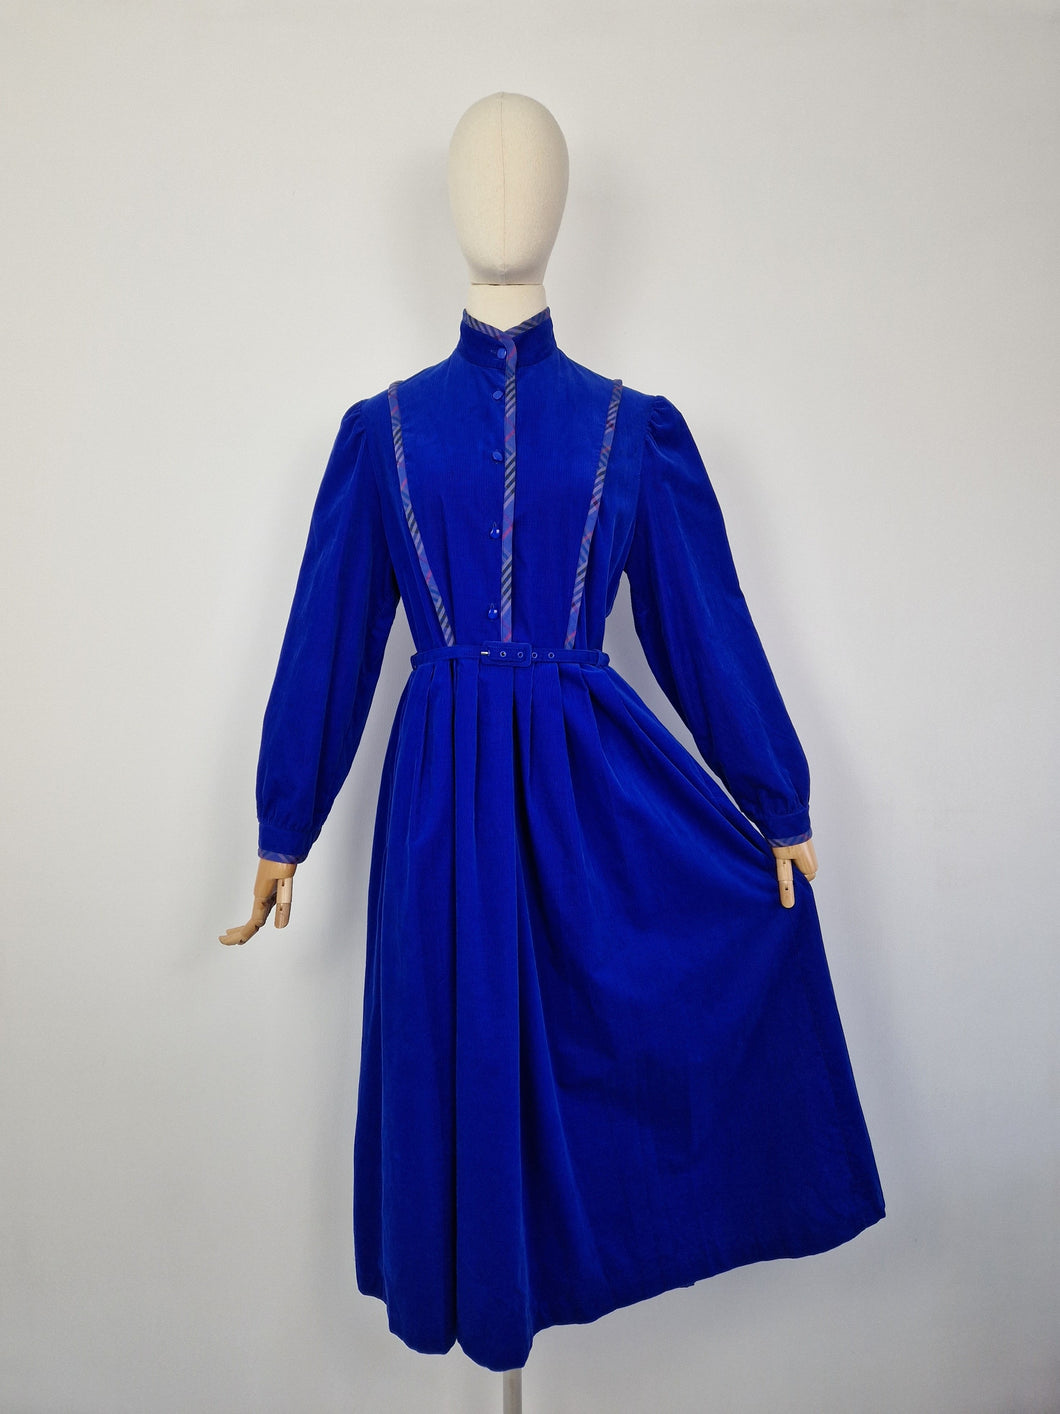 Vintage 80s Marion Donaldson corduroy dress